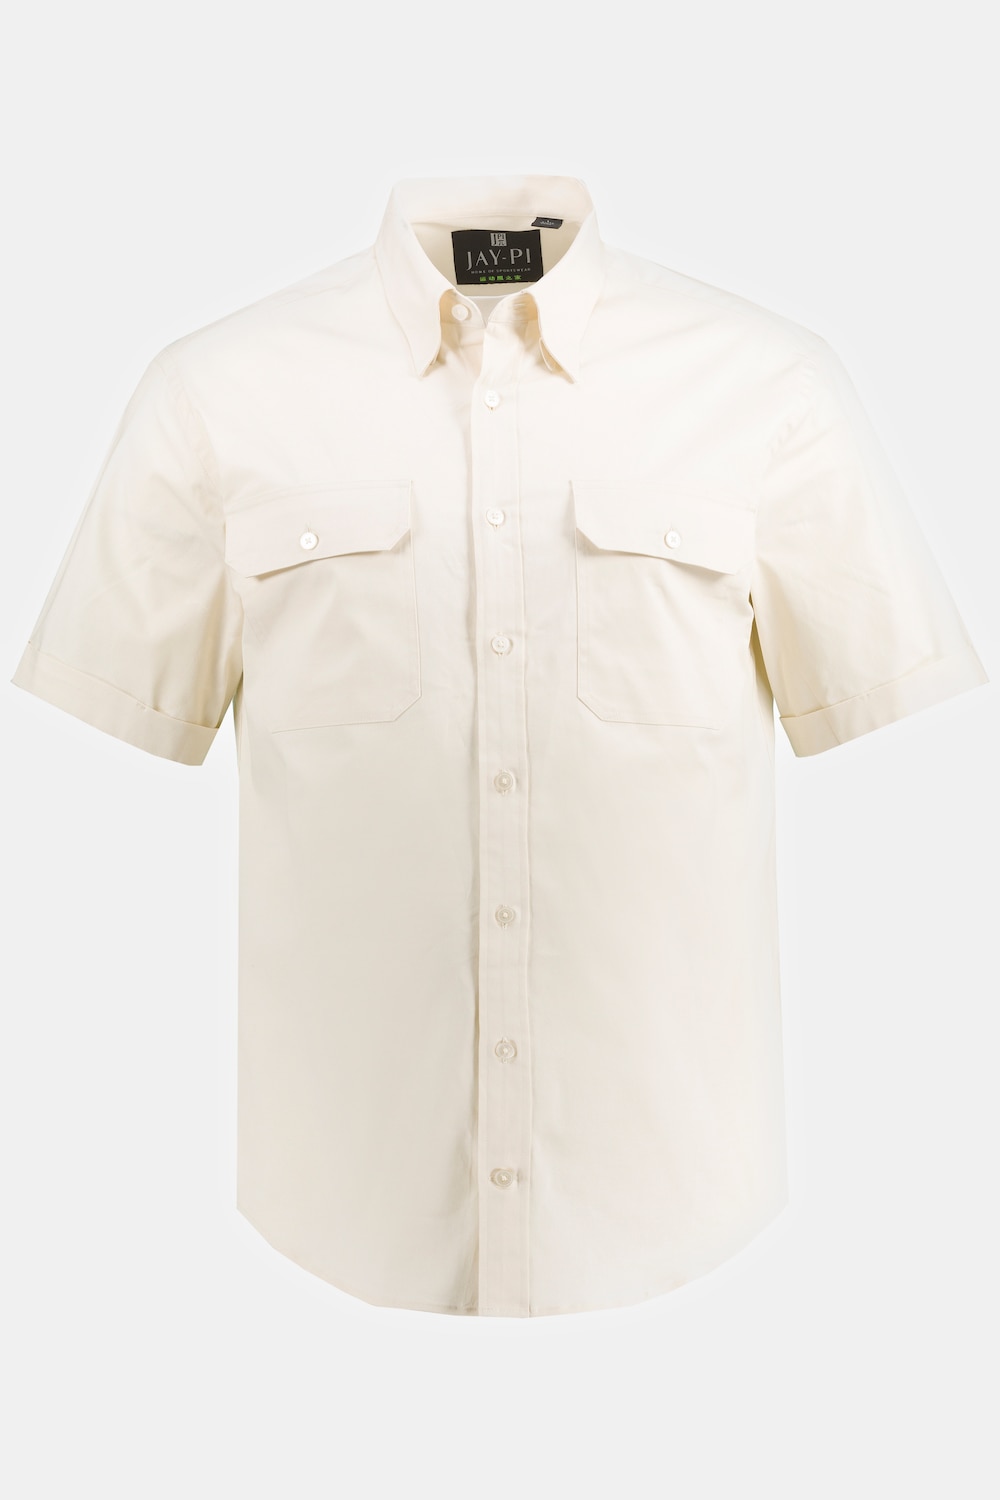 Trekking-Hemd, Große Größen, Herren, beige, Größe: XL, Baumwolle, JAY-PI product